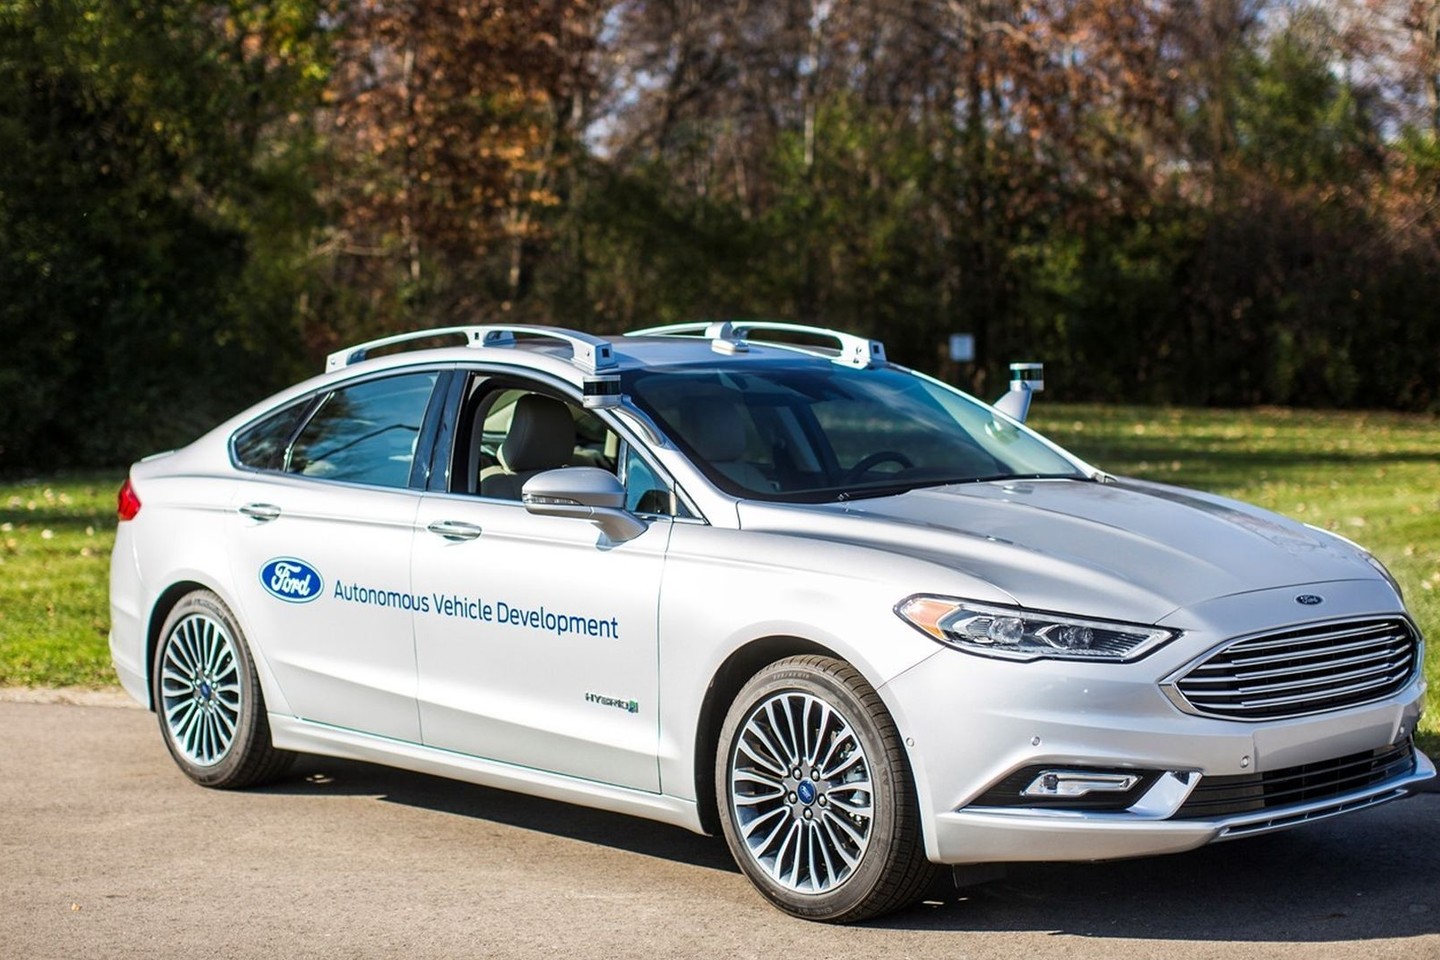 Autonominį autmobilį rinkai „Ford“ pažadėjo pristatyti jau 2021 metais.<br>Gamintojo nuotr.